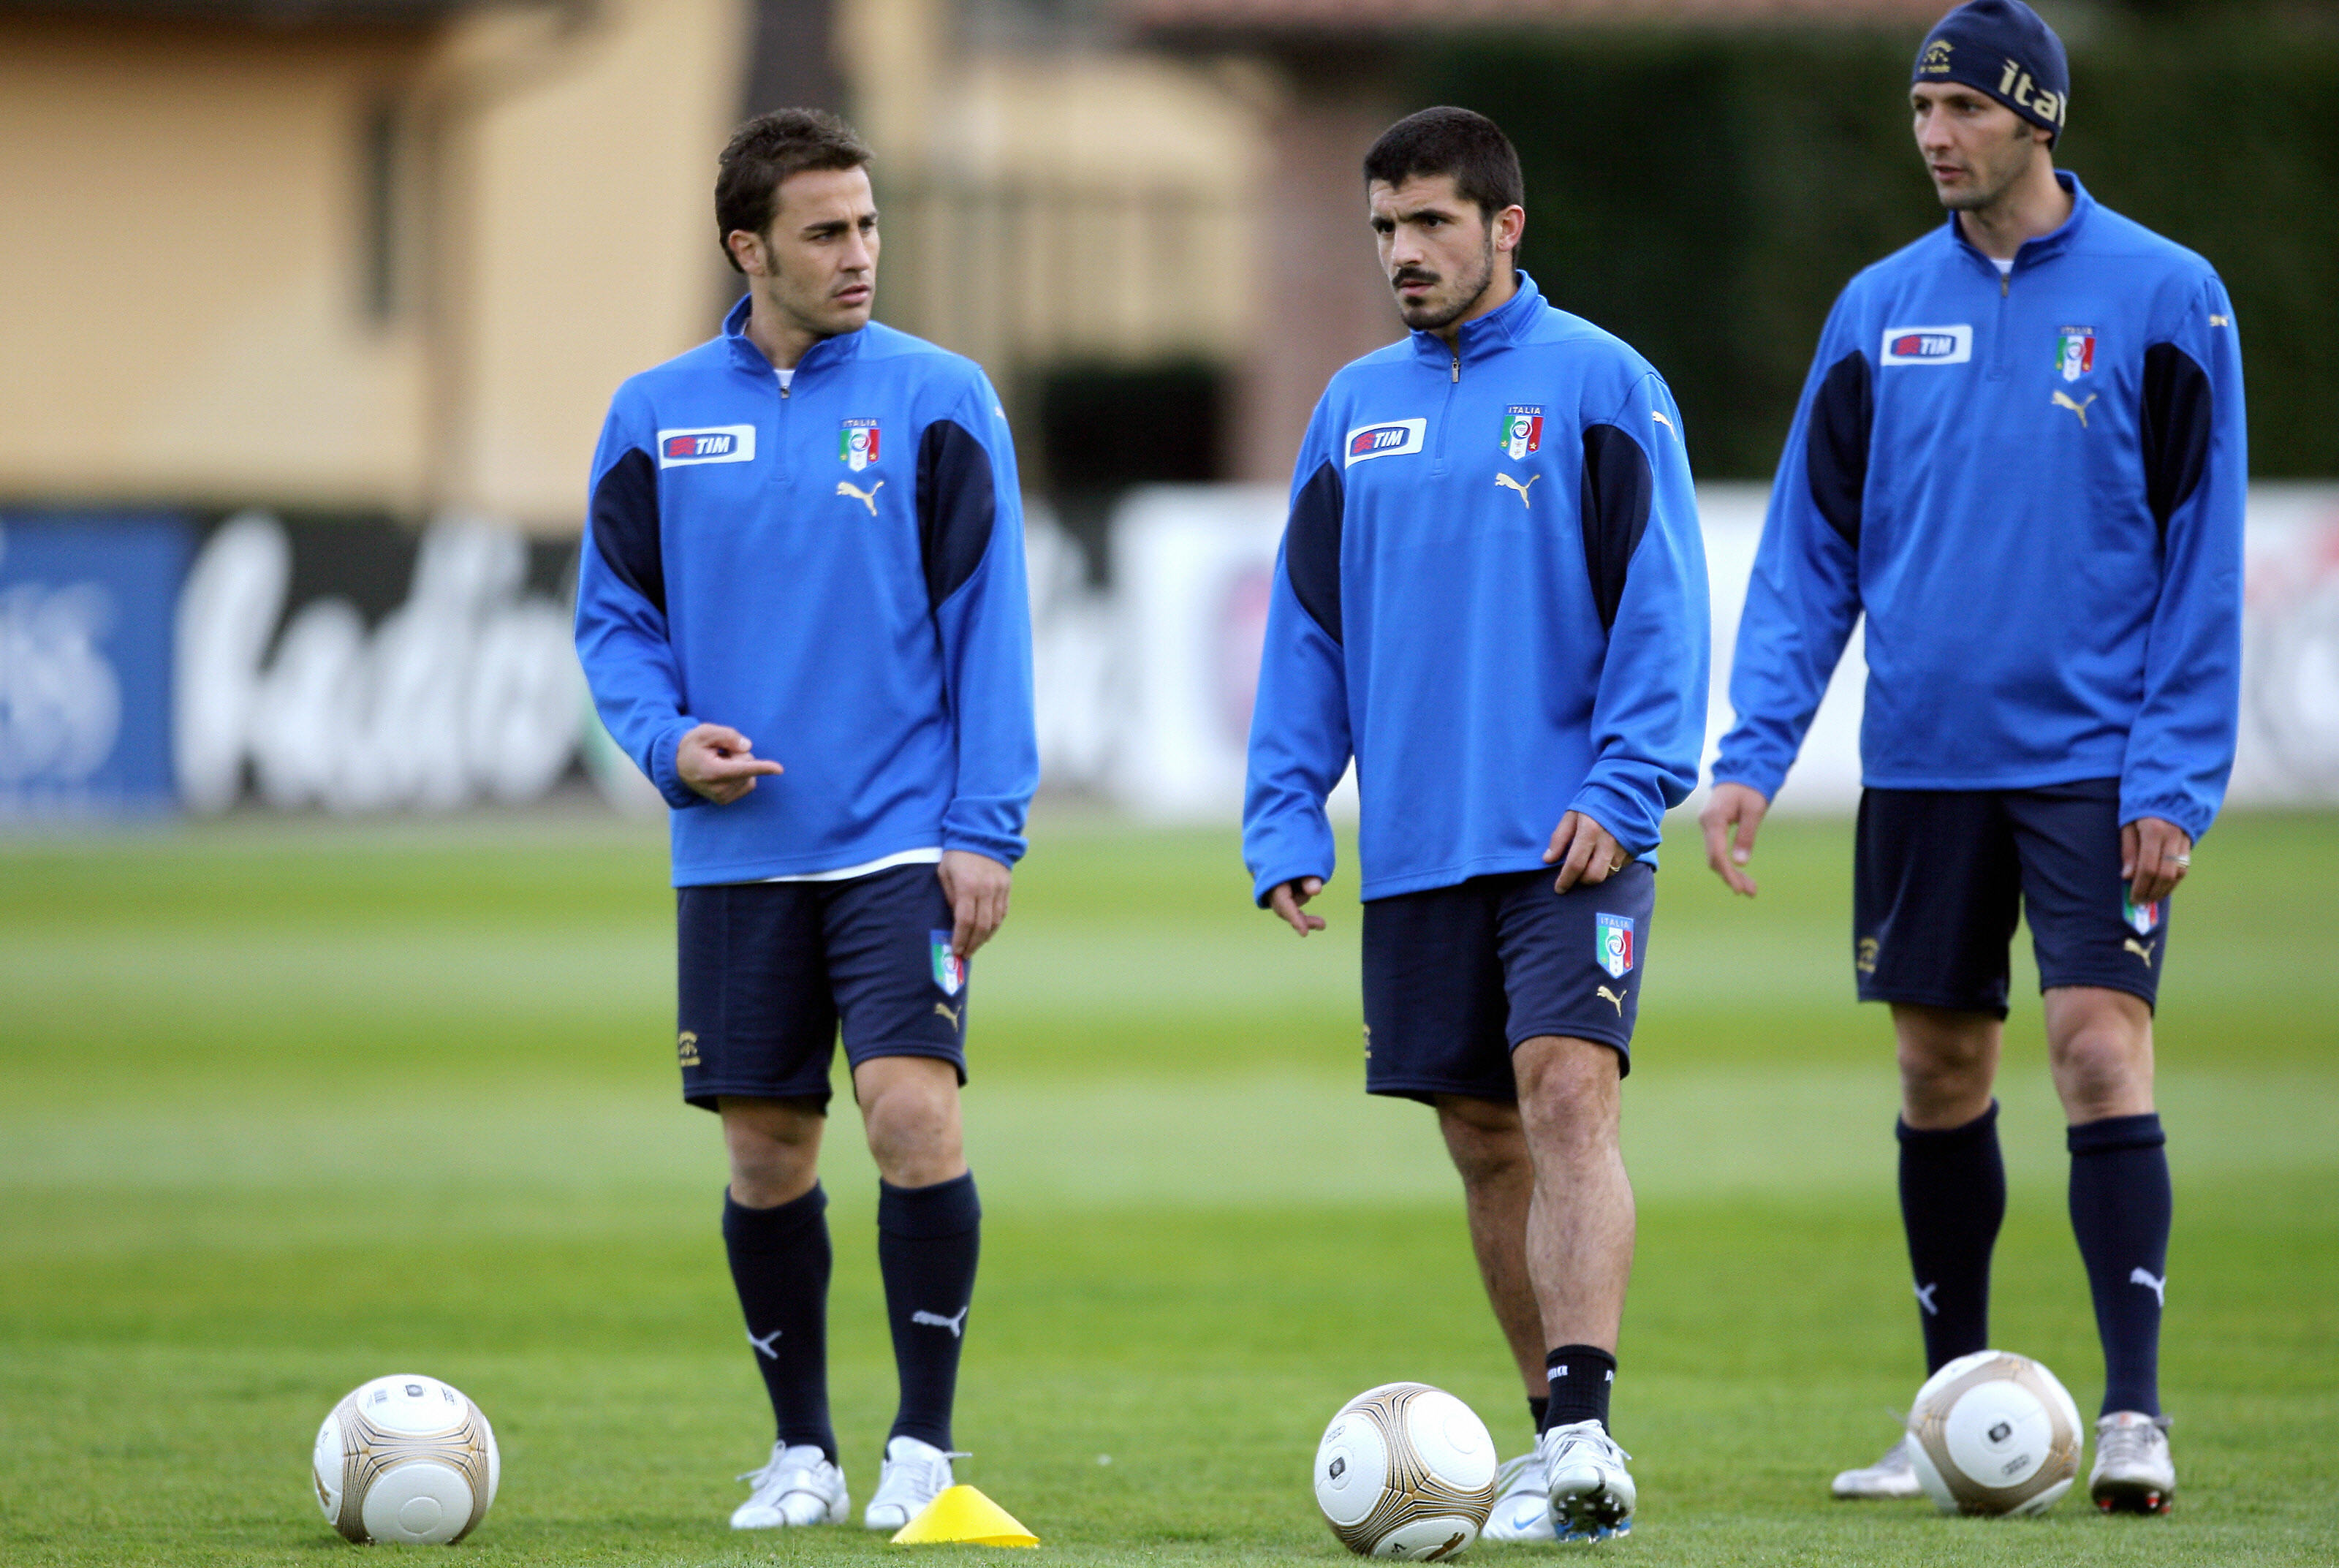 A Coverciano corso allenatori Lega Pro con Gattuso, Cannavaro e Materazzi